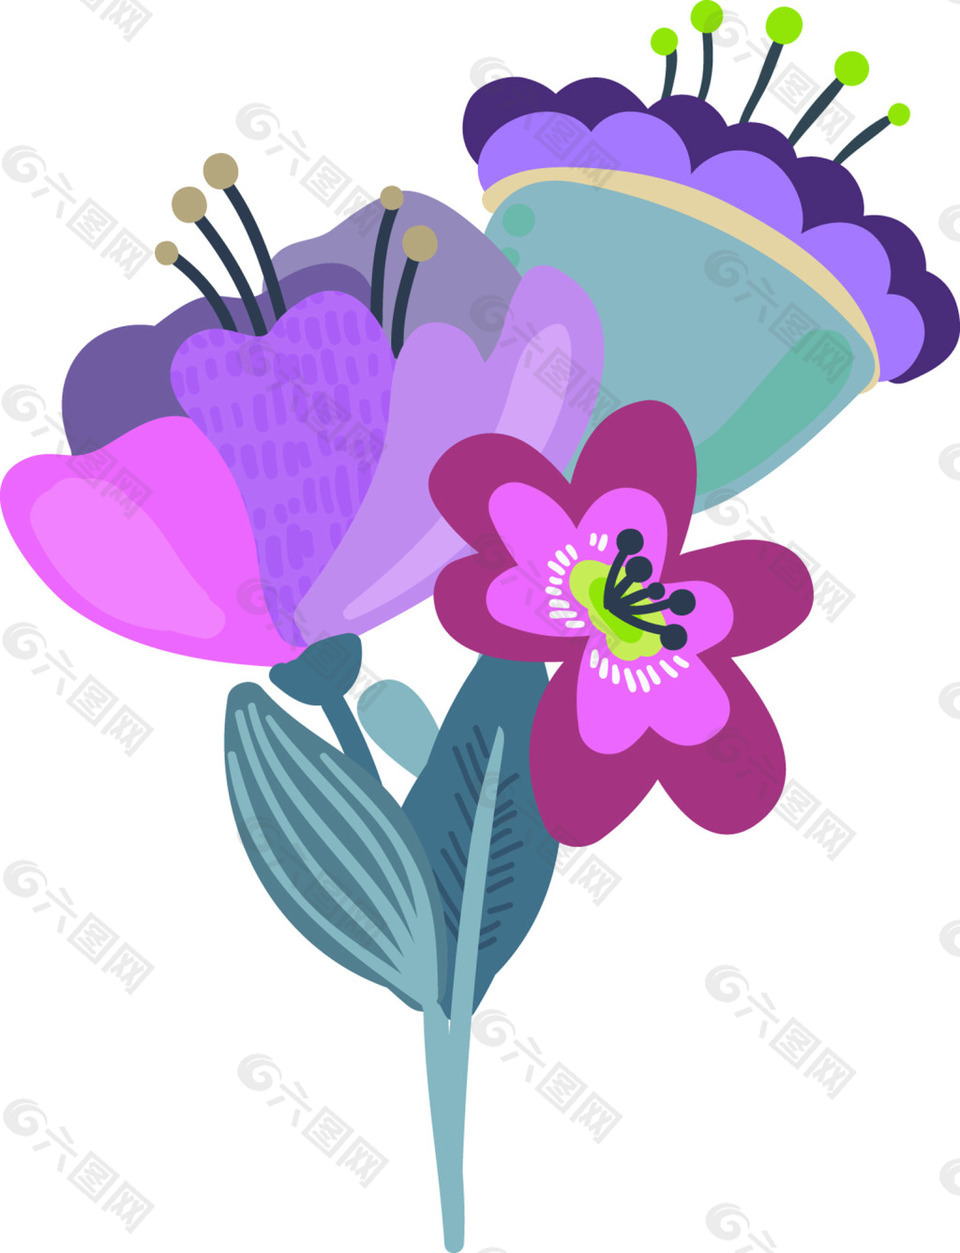 紫色卡通花朵矢量素材